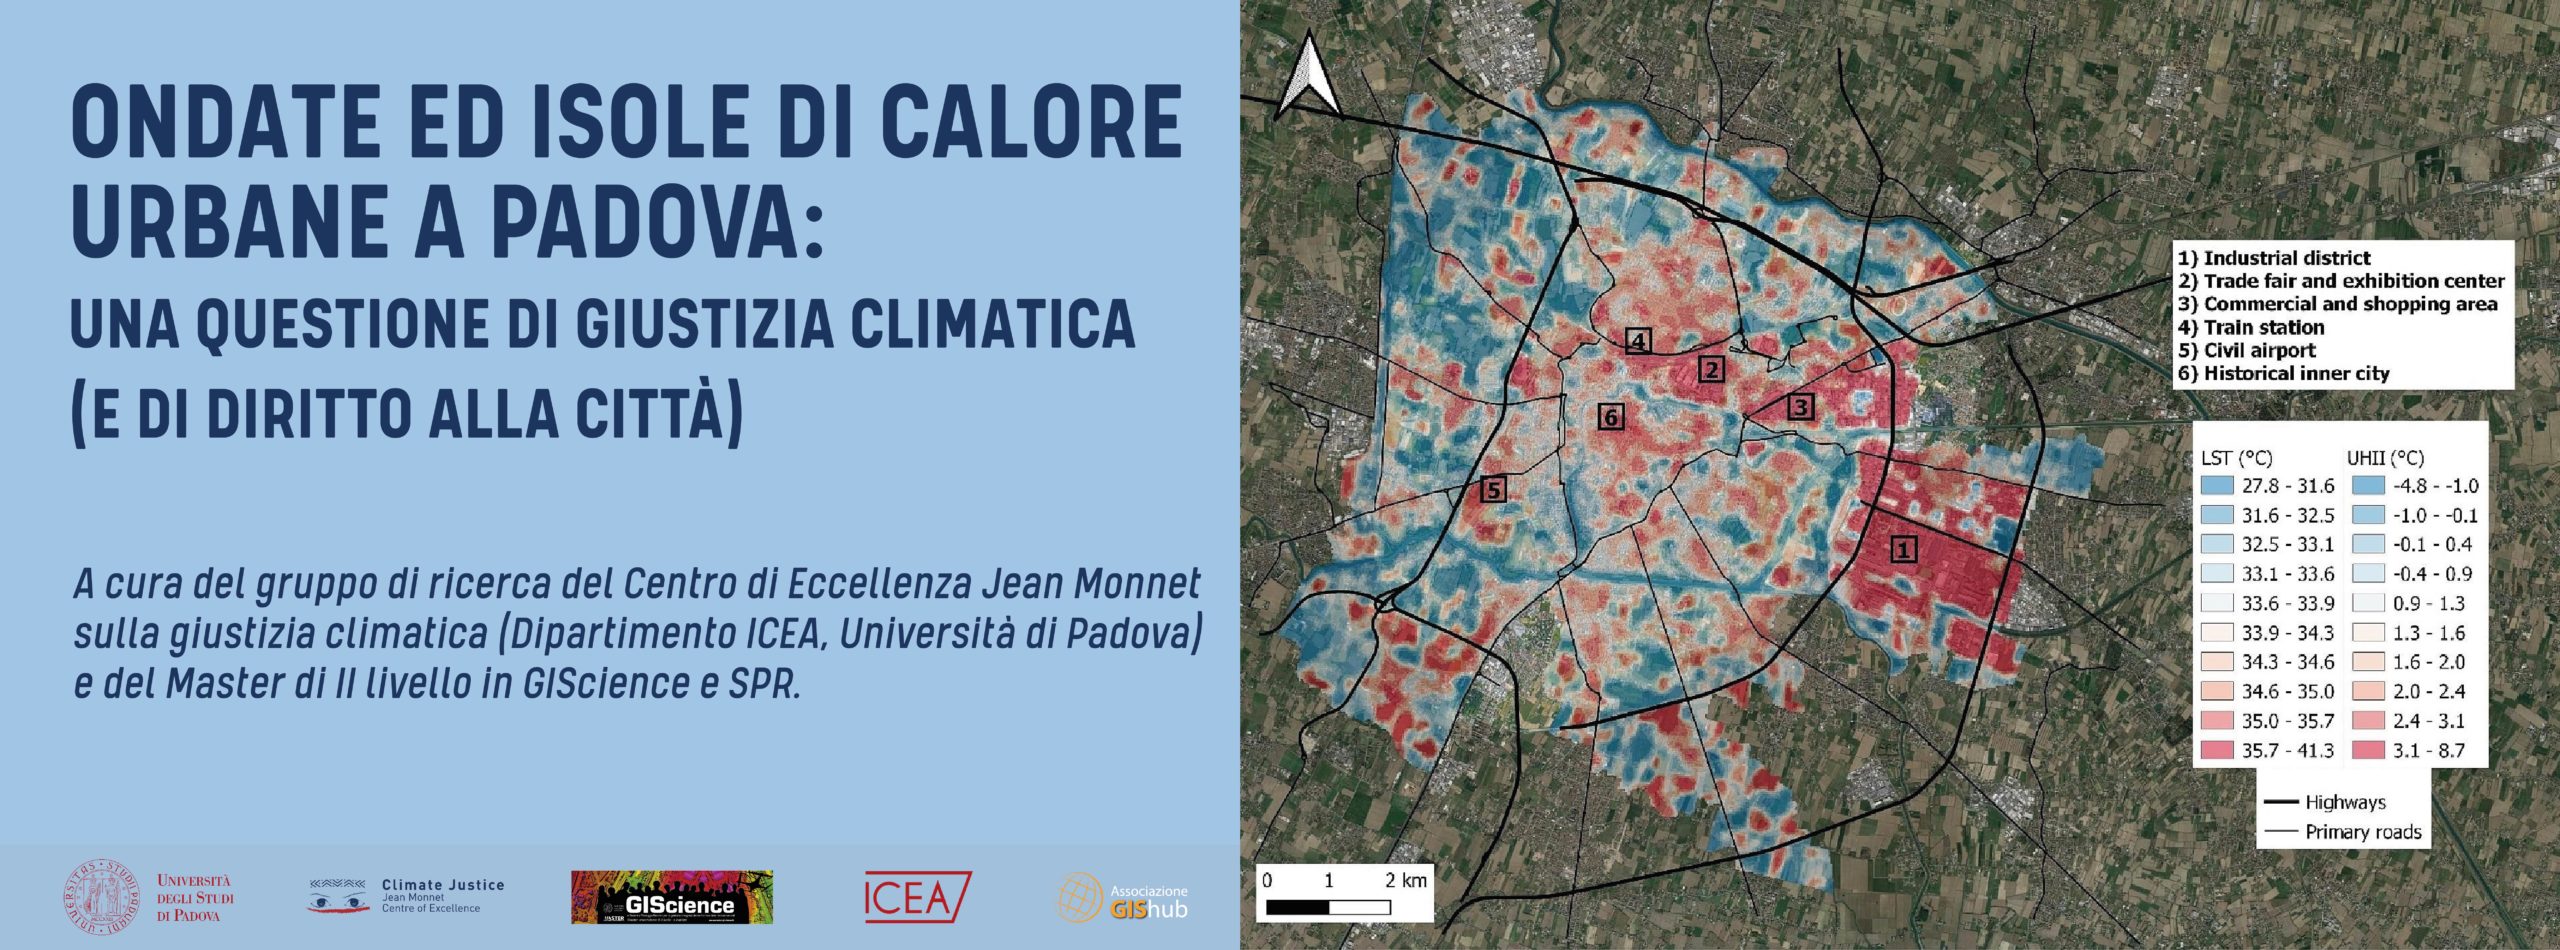 Ondate ed isole di calore urbane a Padova: una questione di giustizia climatica (e di diritto alla città)